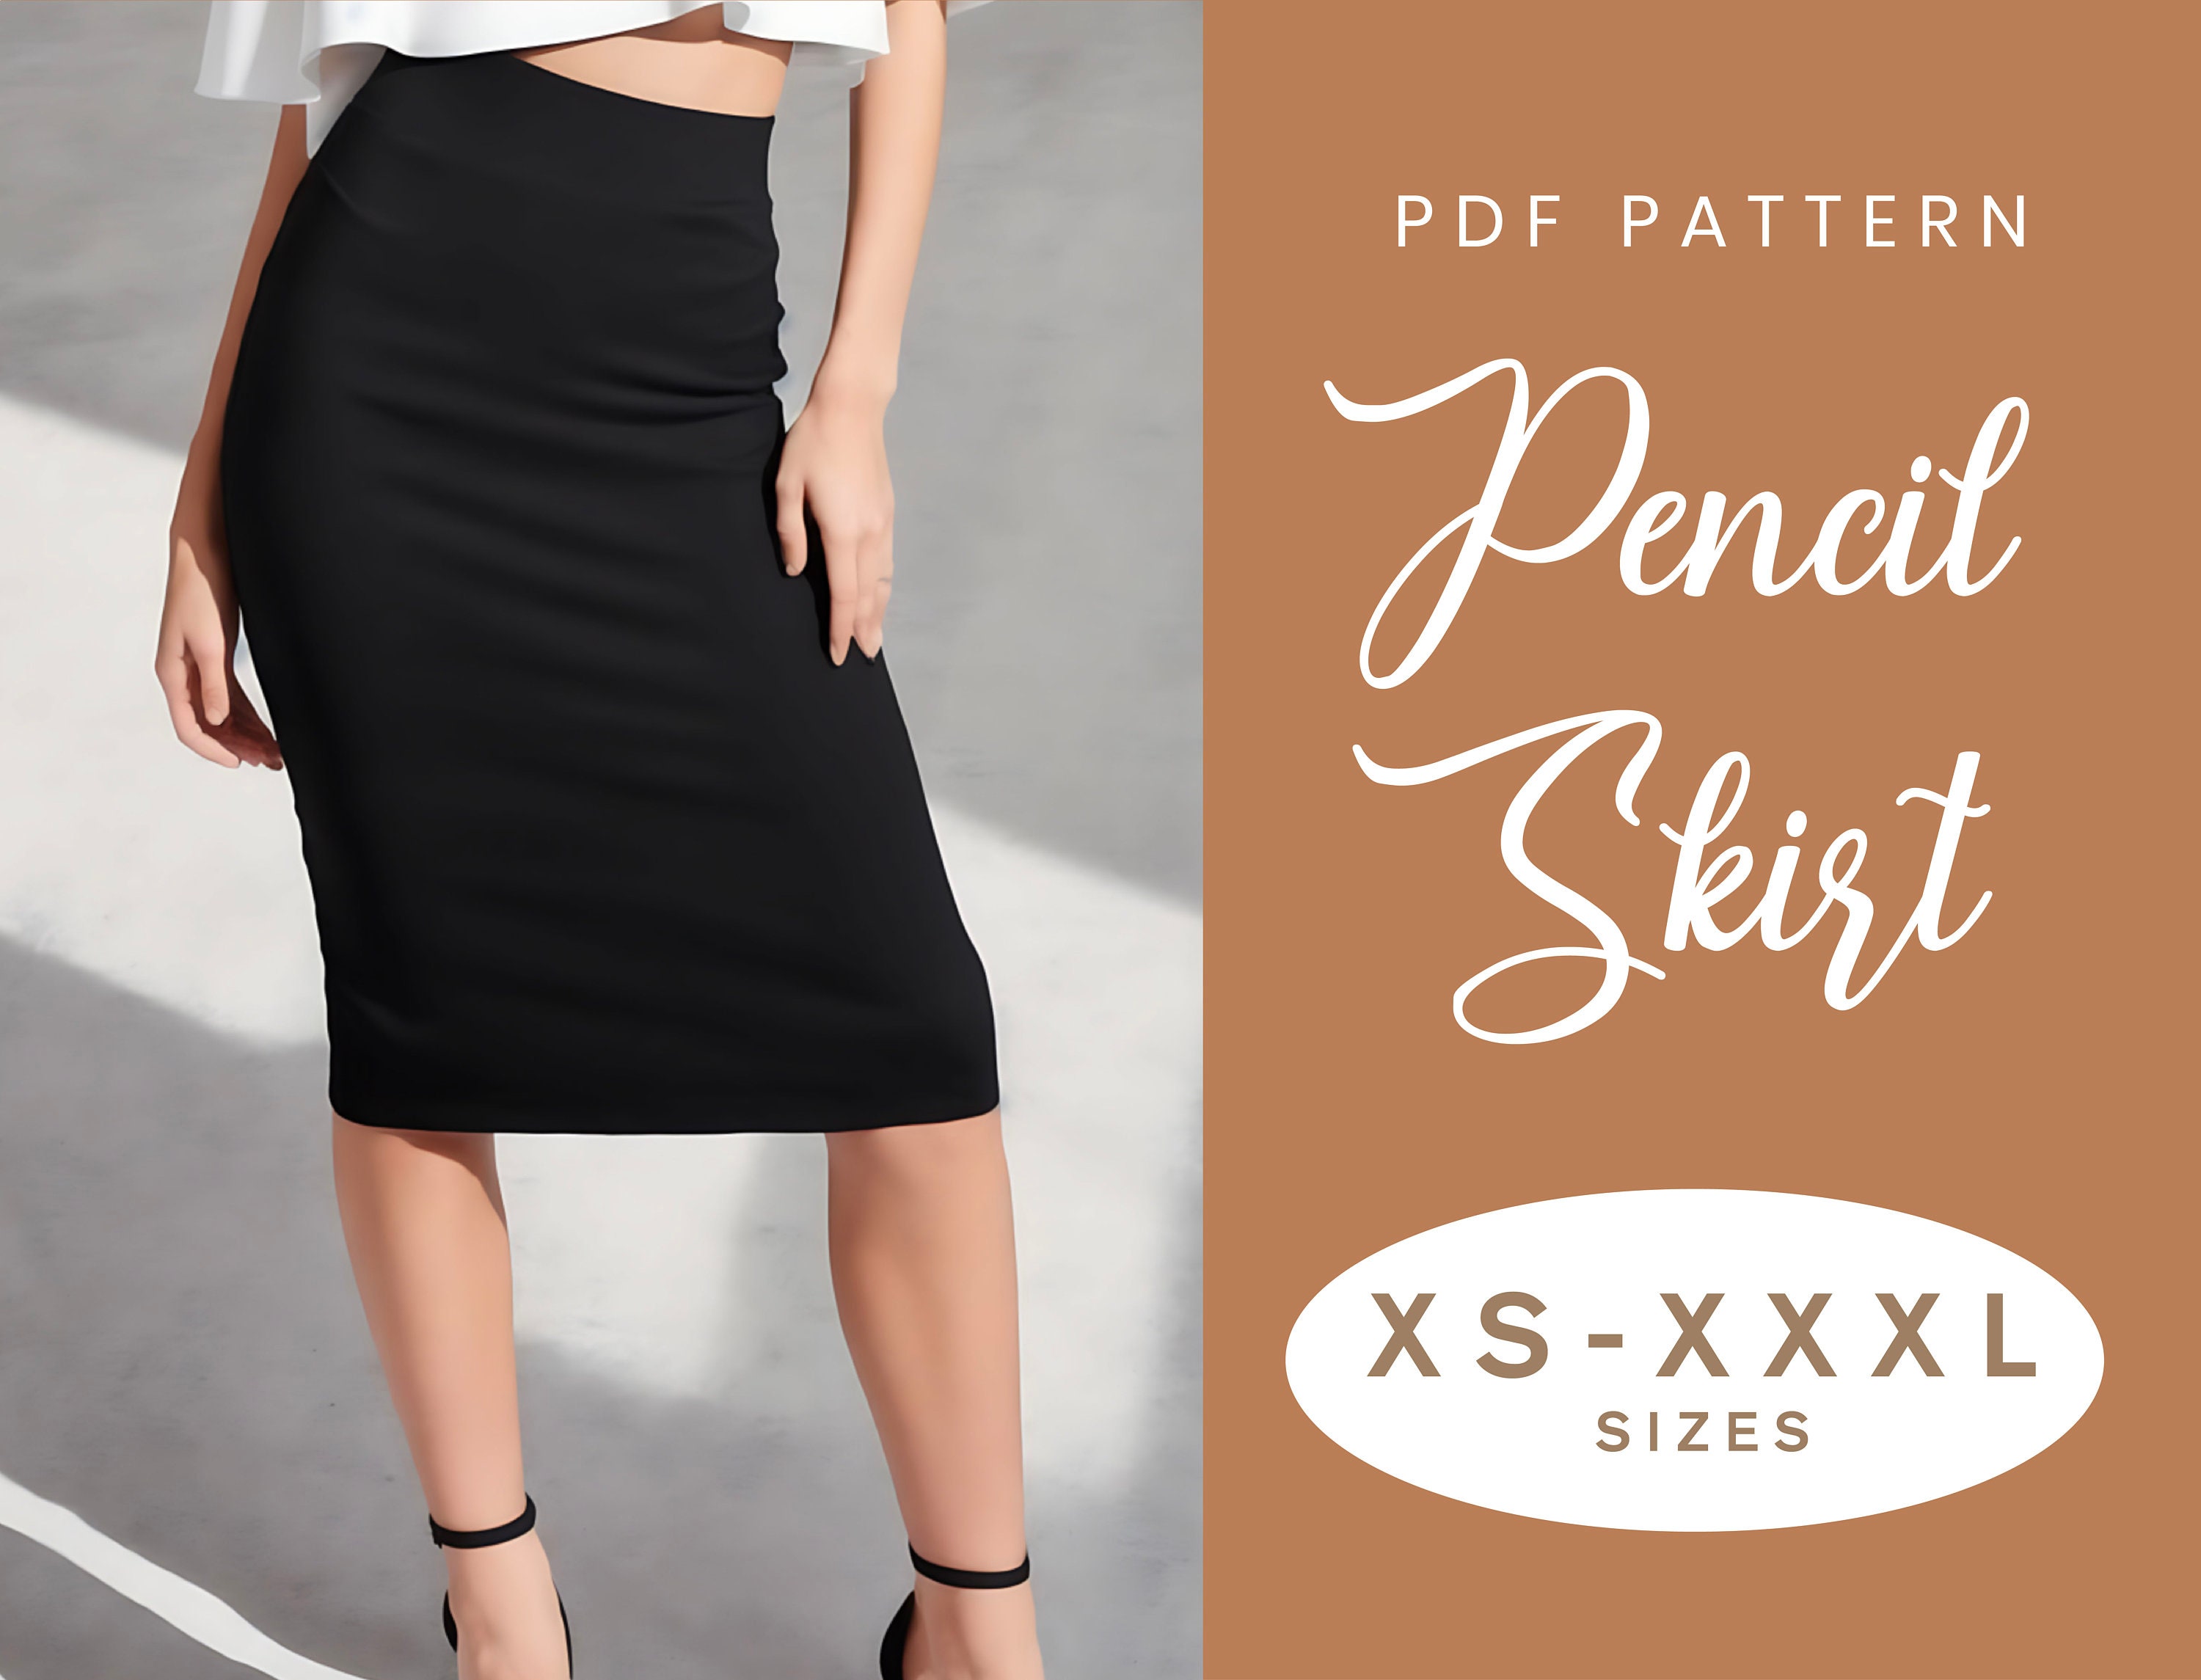 Mesh Mini Skirt Skirt Patterns for Sewing Women Skirt Long Slim Bodycon Straight Women High-Waist Skirt Solid Skirt Girls Long Denim Skirts, Women's